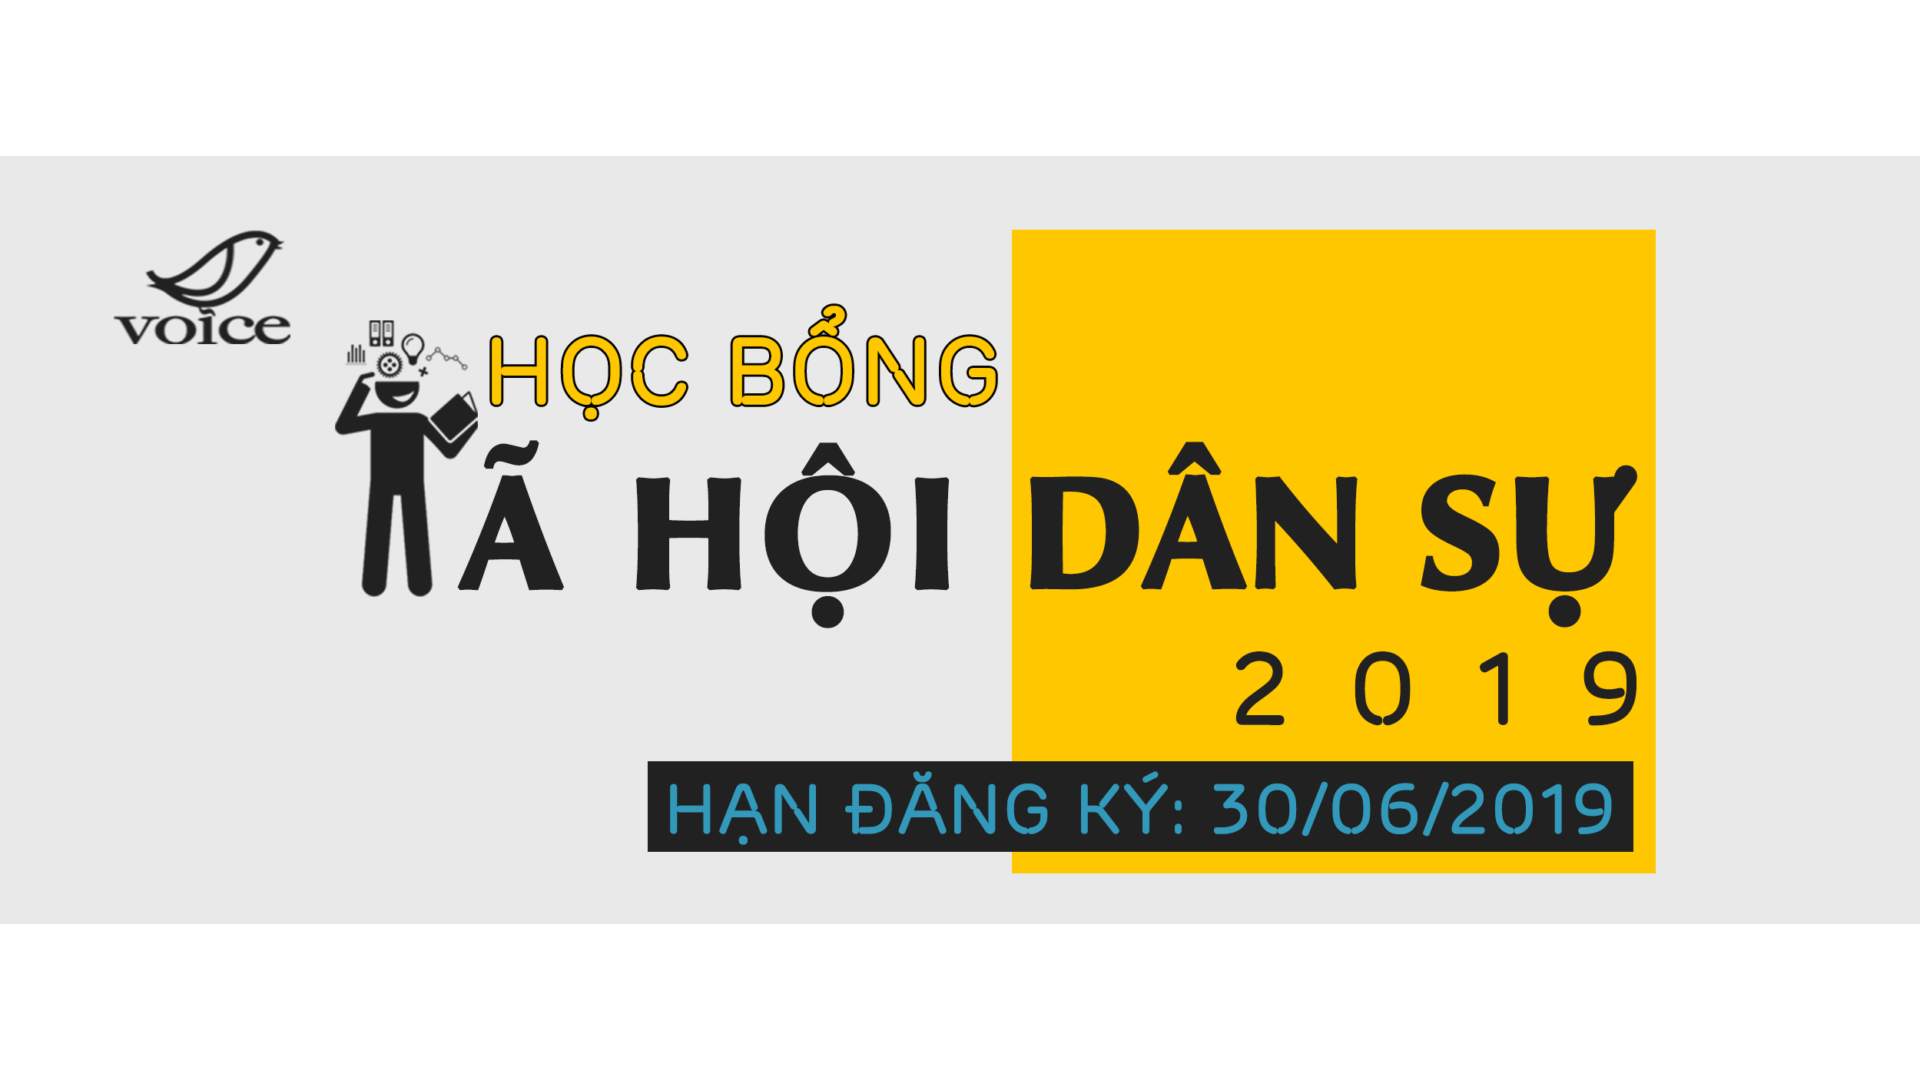 (Tiếng Việt) Học bổng Xã hội Dân sự VOICE lần thứ 10